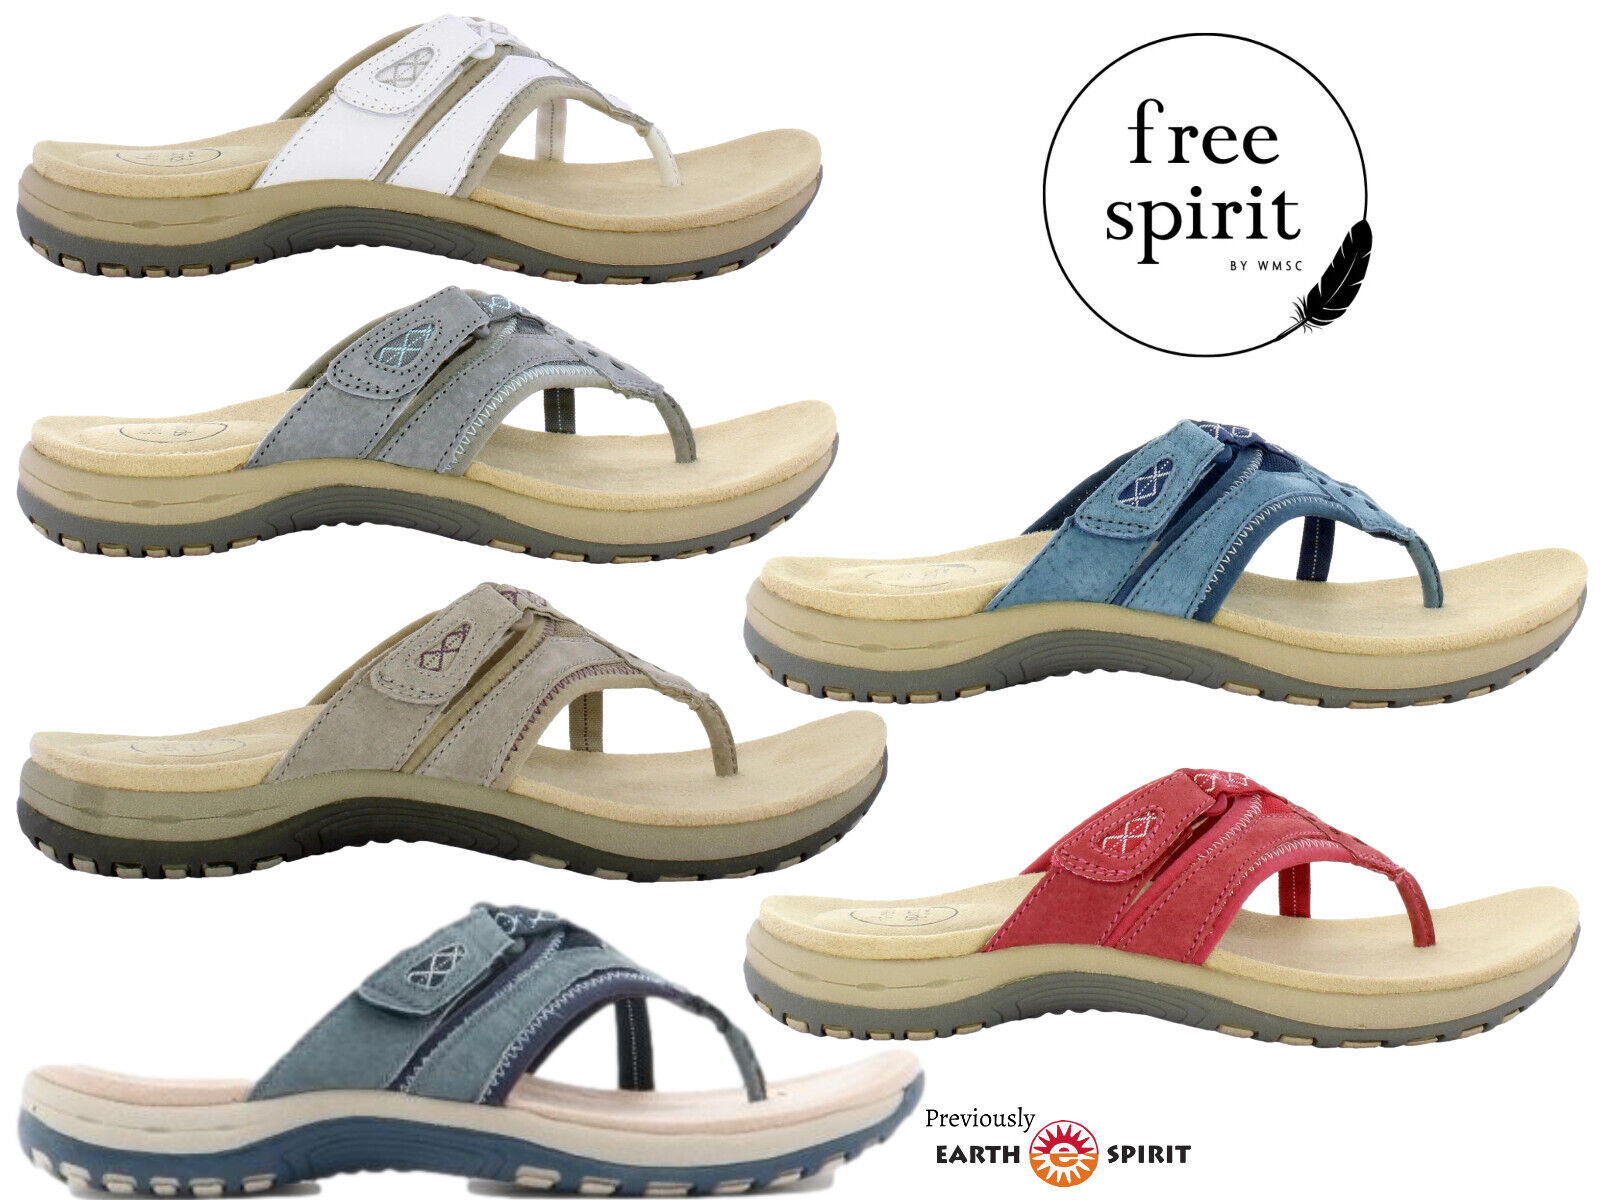 free spirit sandals website